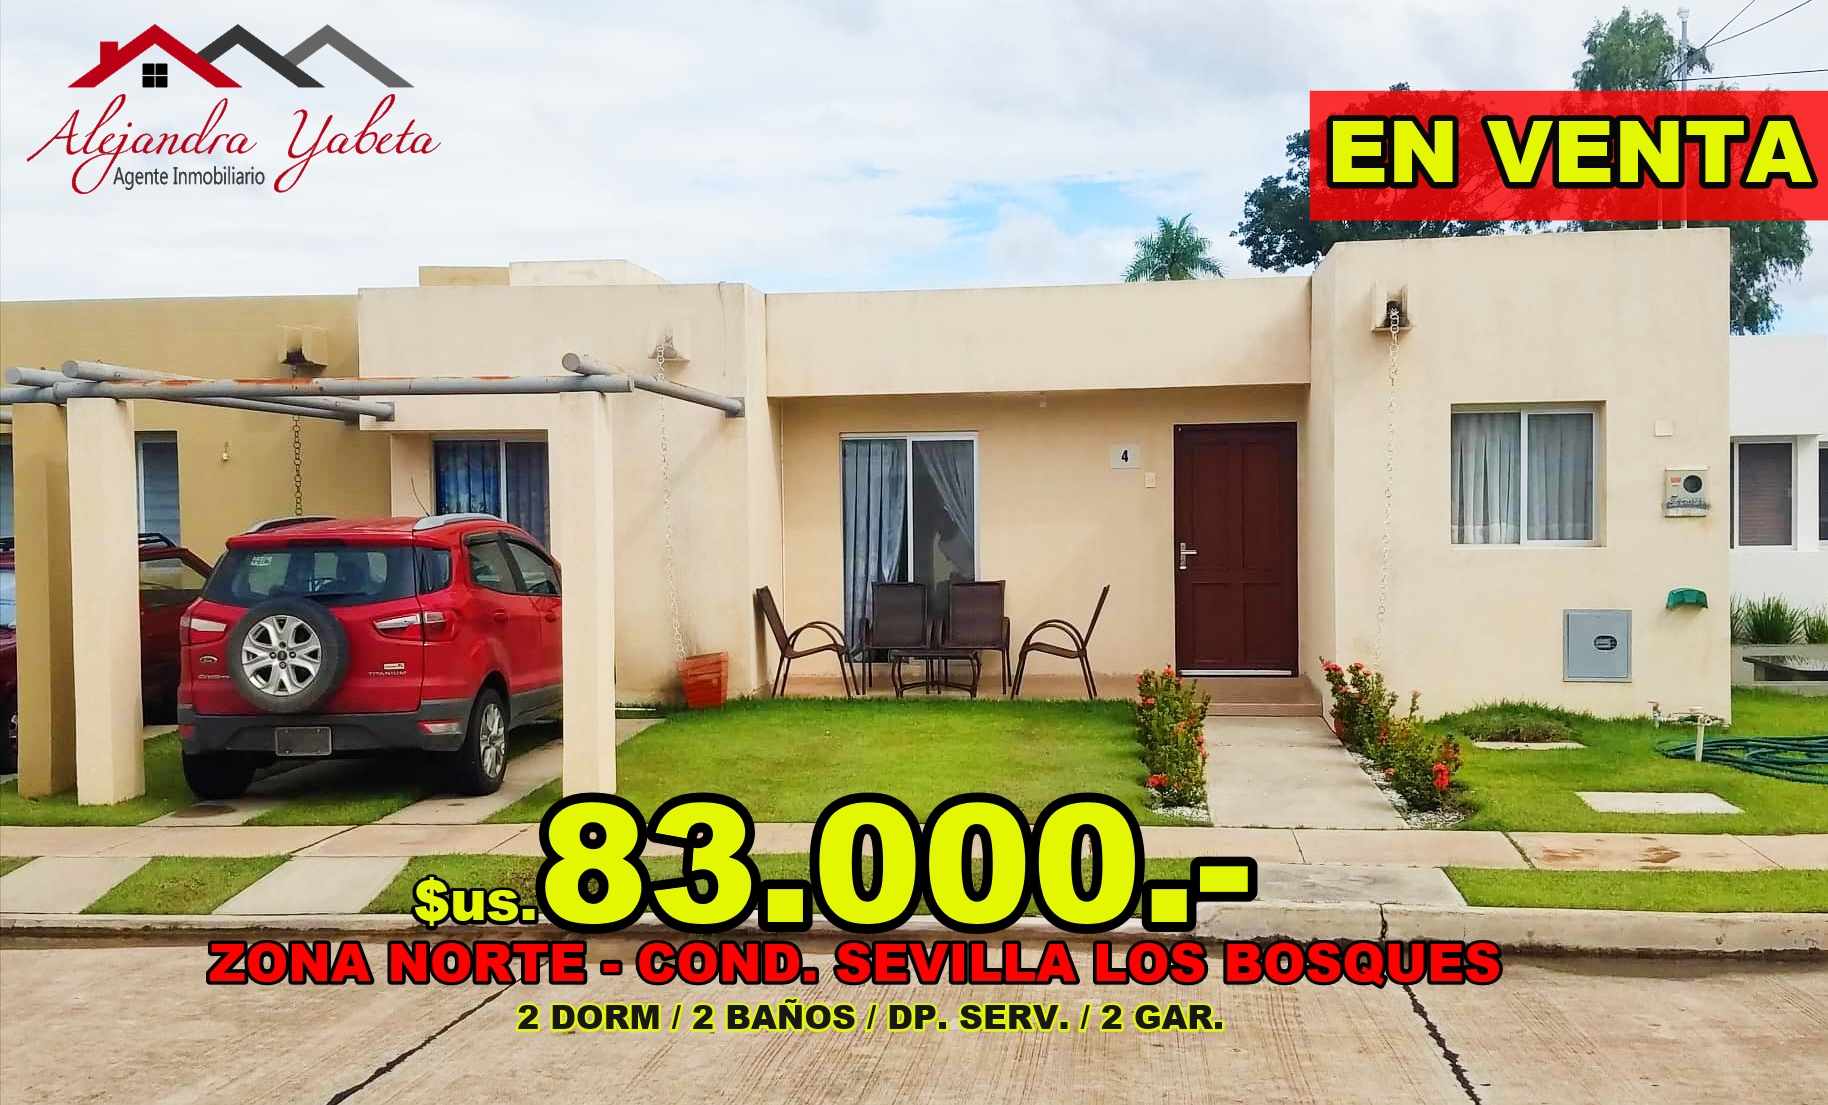 Casa ZONA NORTE - CONDOMINIO SEVILLA LOS BOSQUES - LINDA CASA EN VENTA EN $83.000.- Foto 1